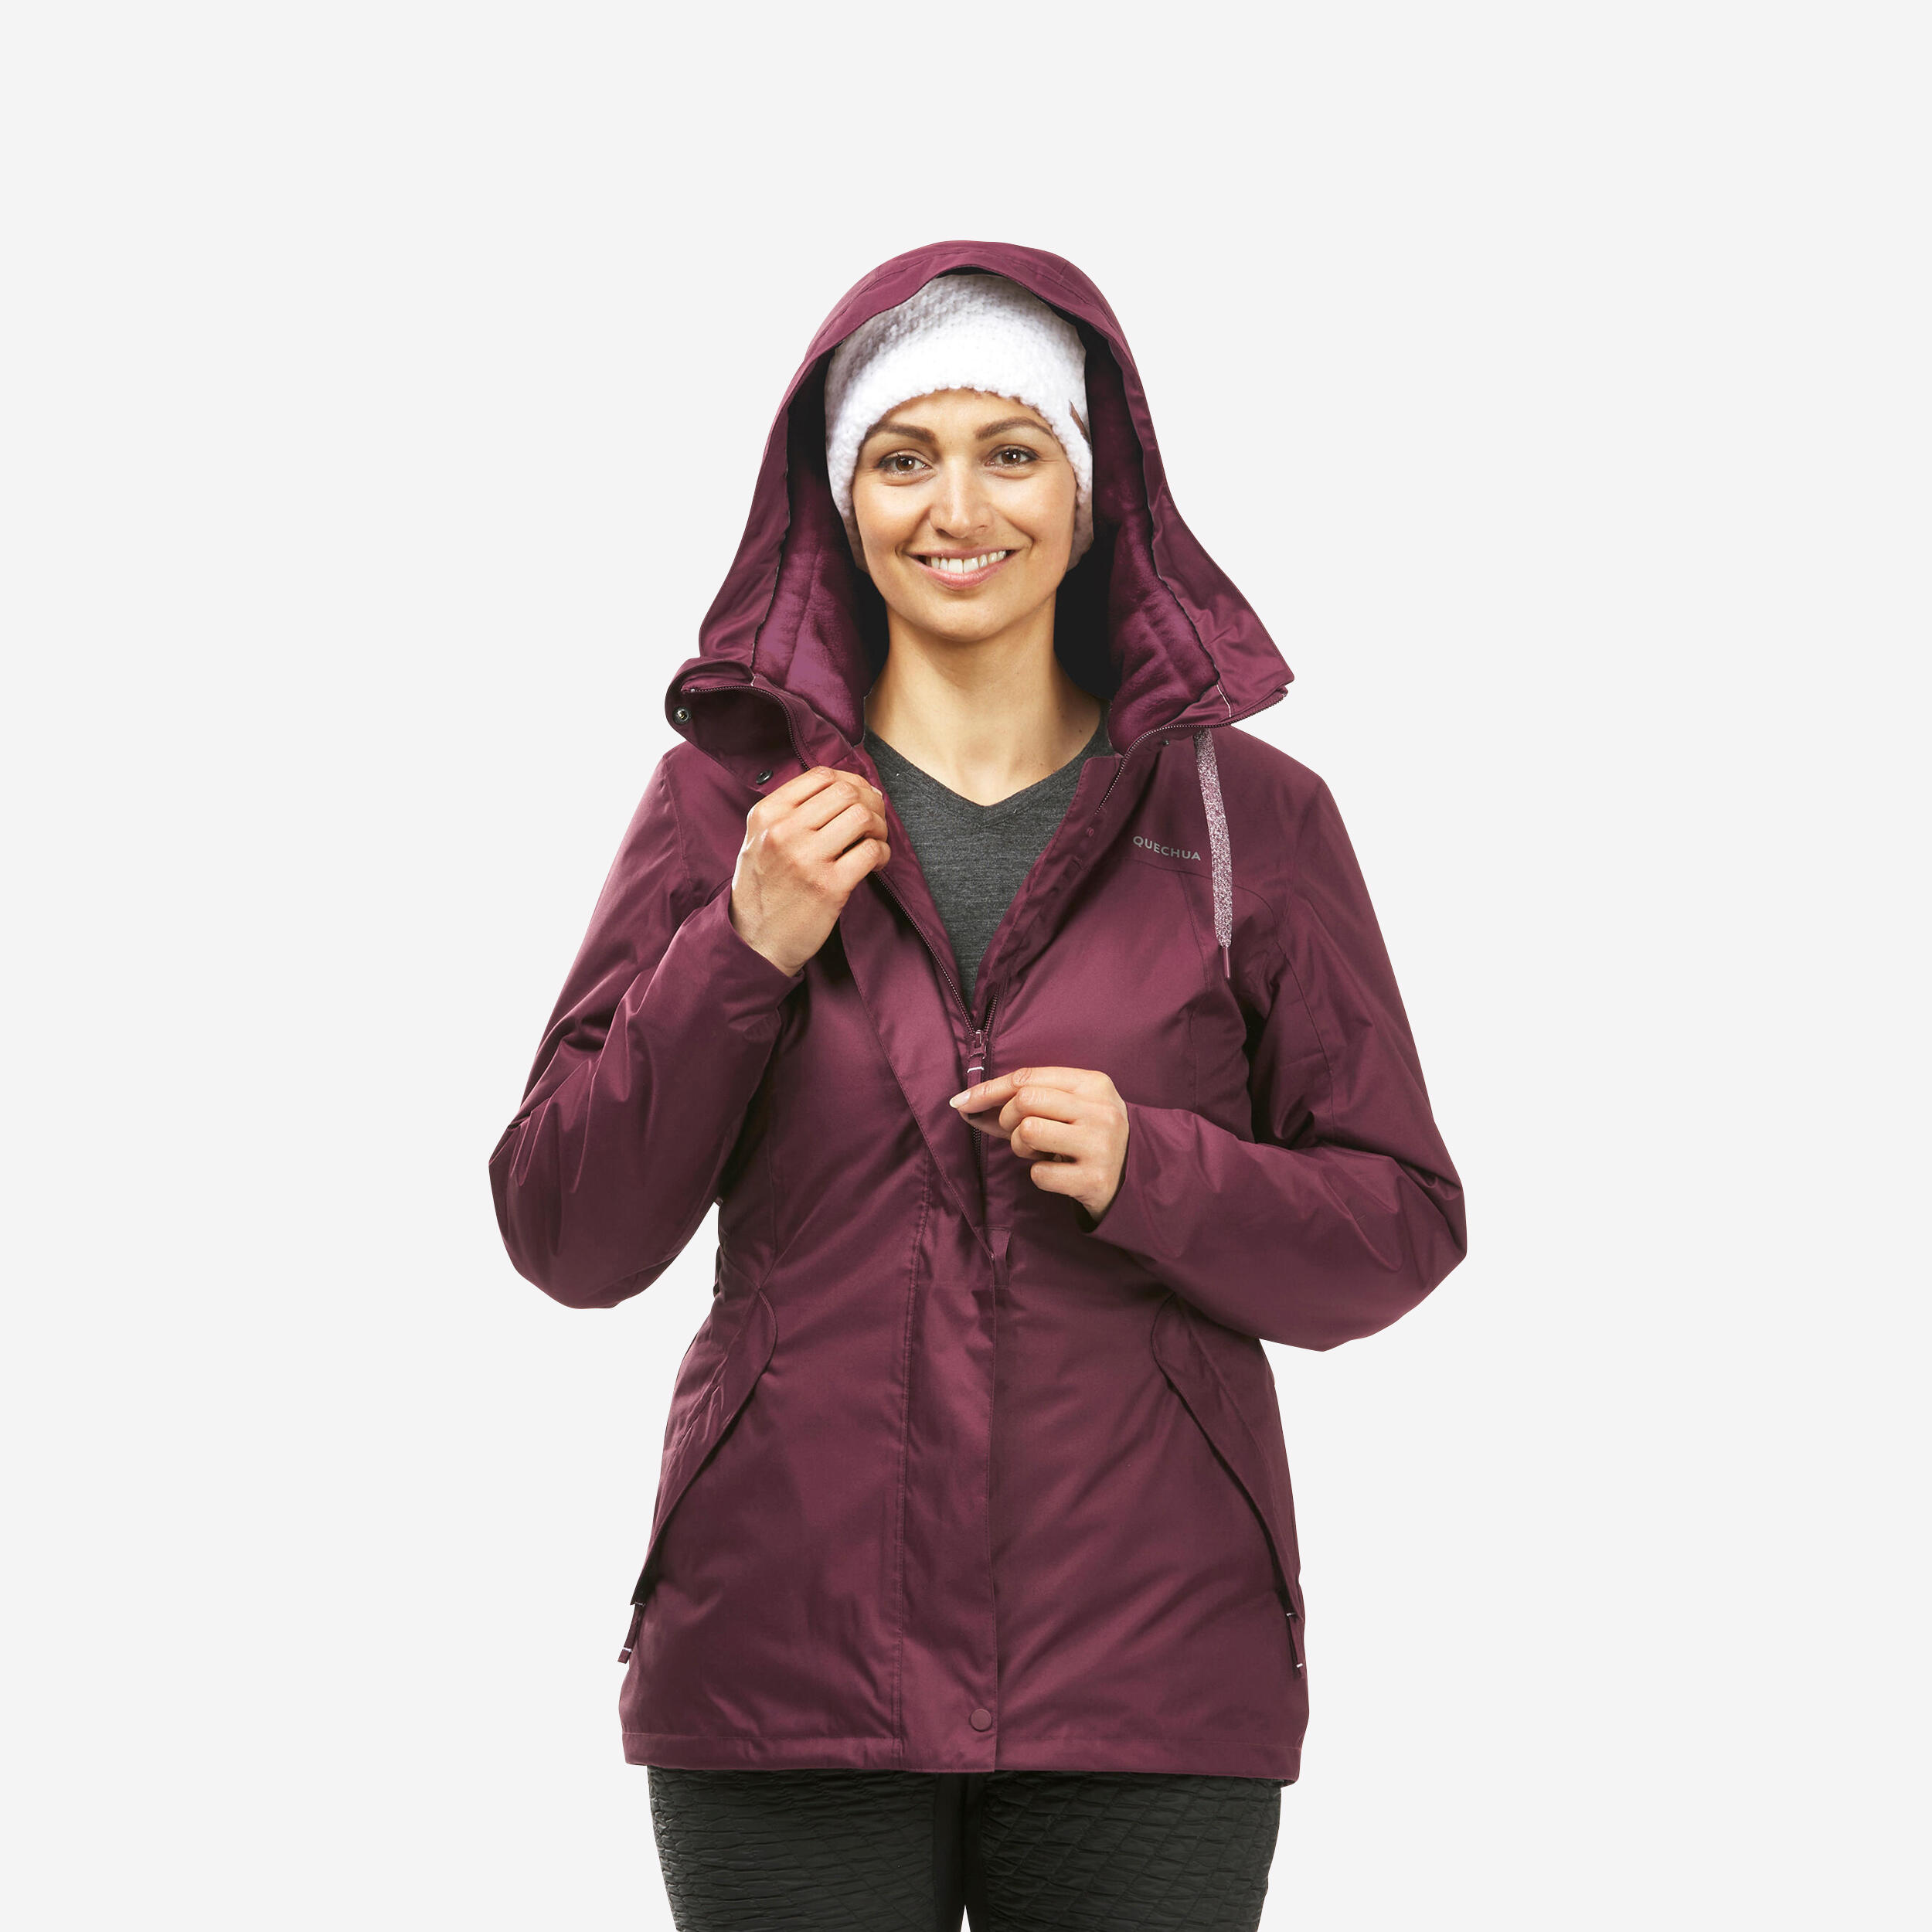 Women’s hiking waterproof winter jacket - SH500 -10°C 1/11